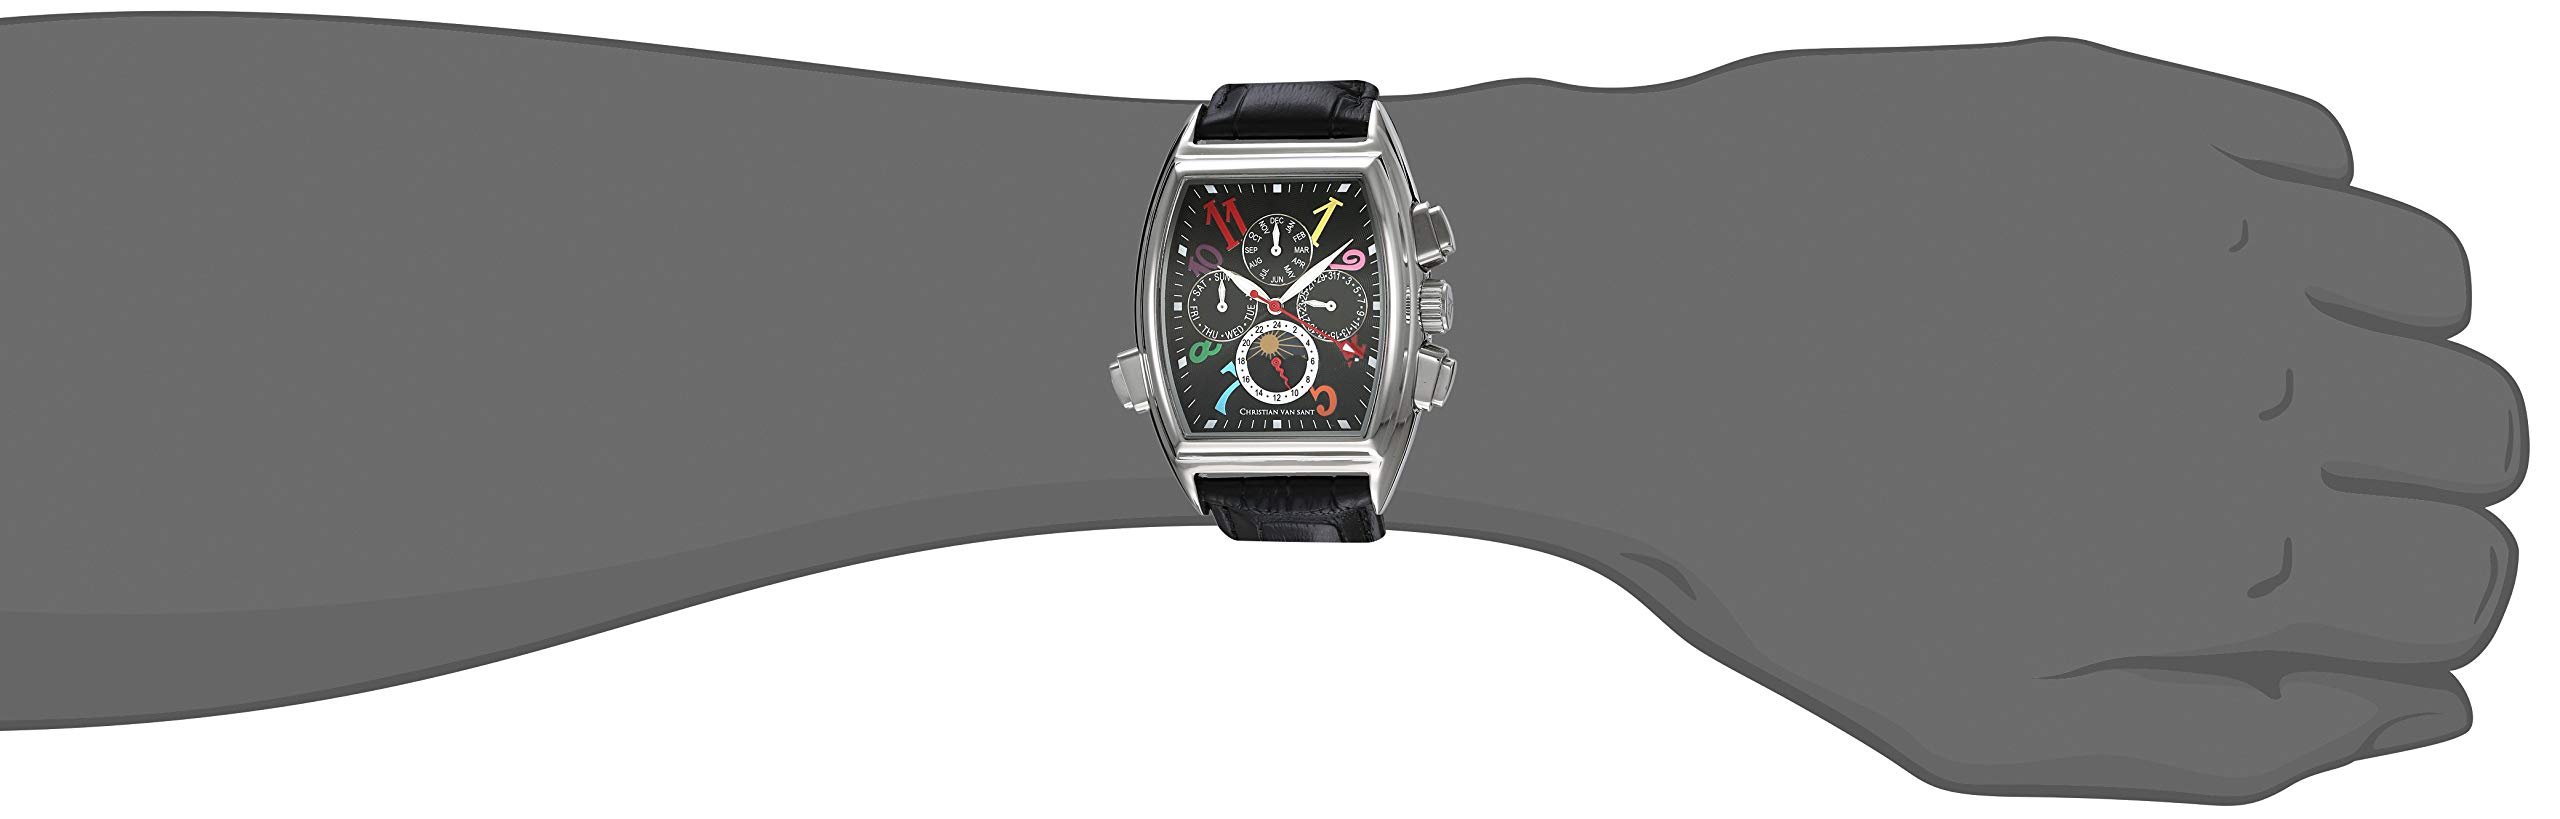 Christian Van Sant Men's CV2130 Grandeur Analog Display Automatic Self Wind Black Watch